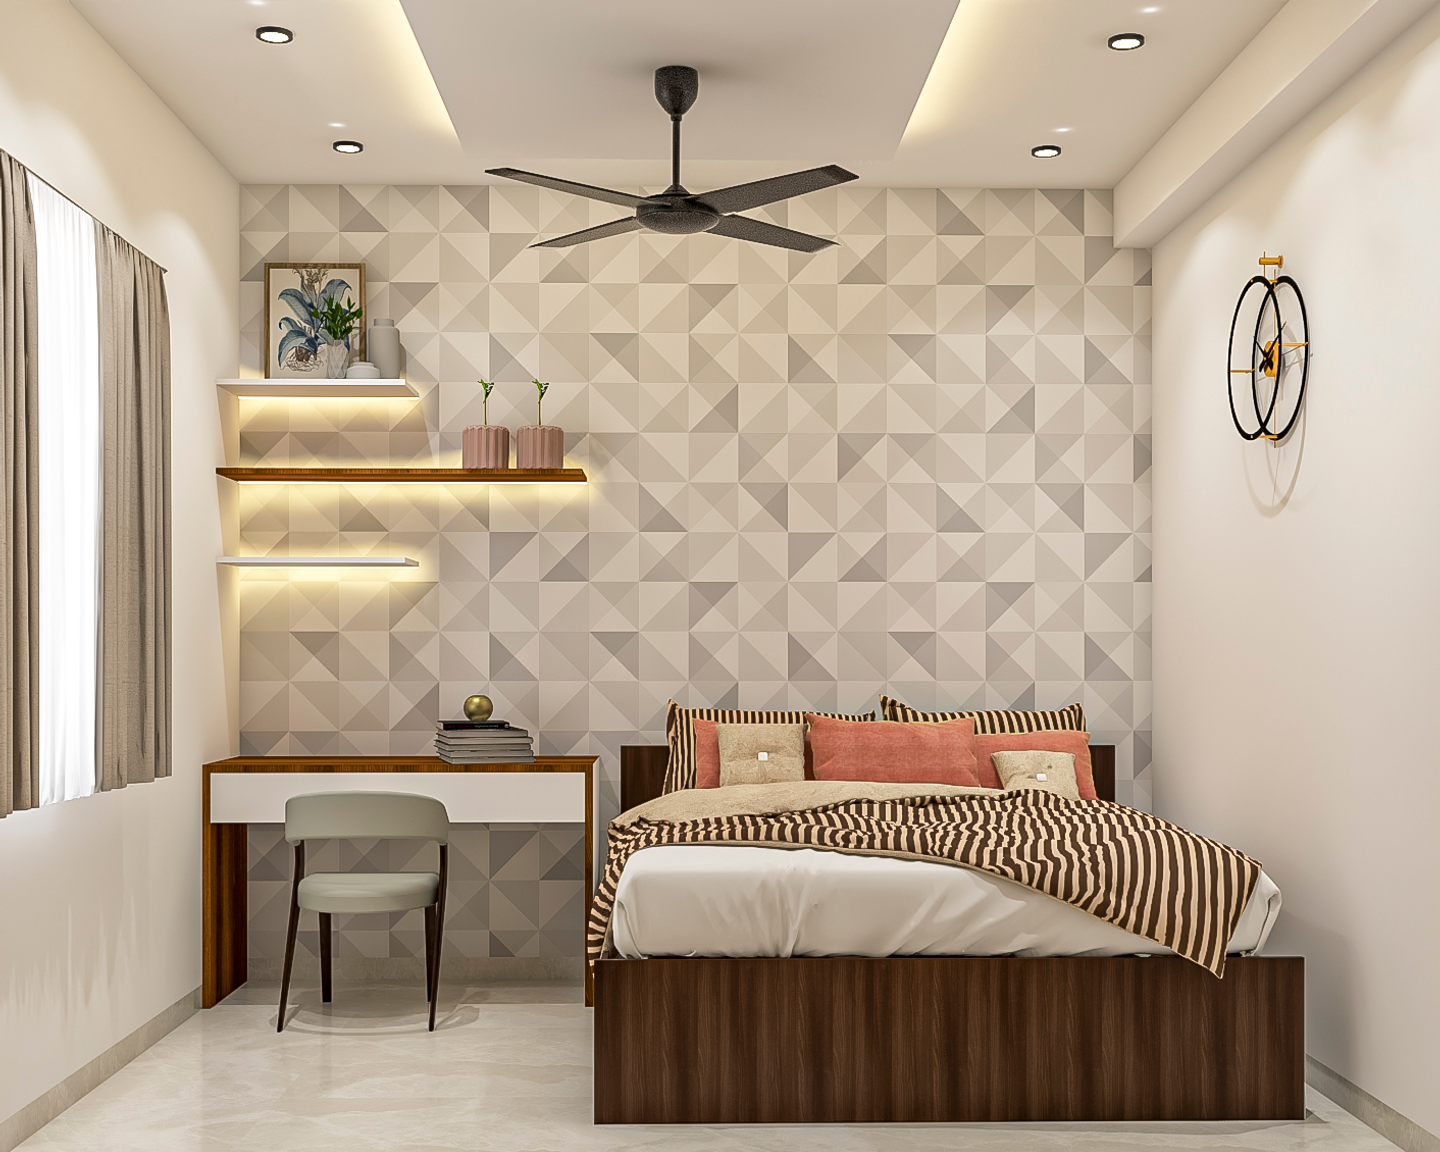 Guest Bedroom Design With Wallpaper - Livspace